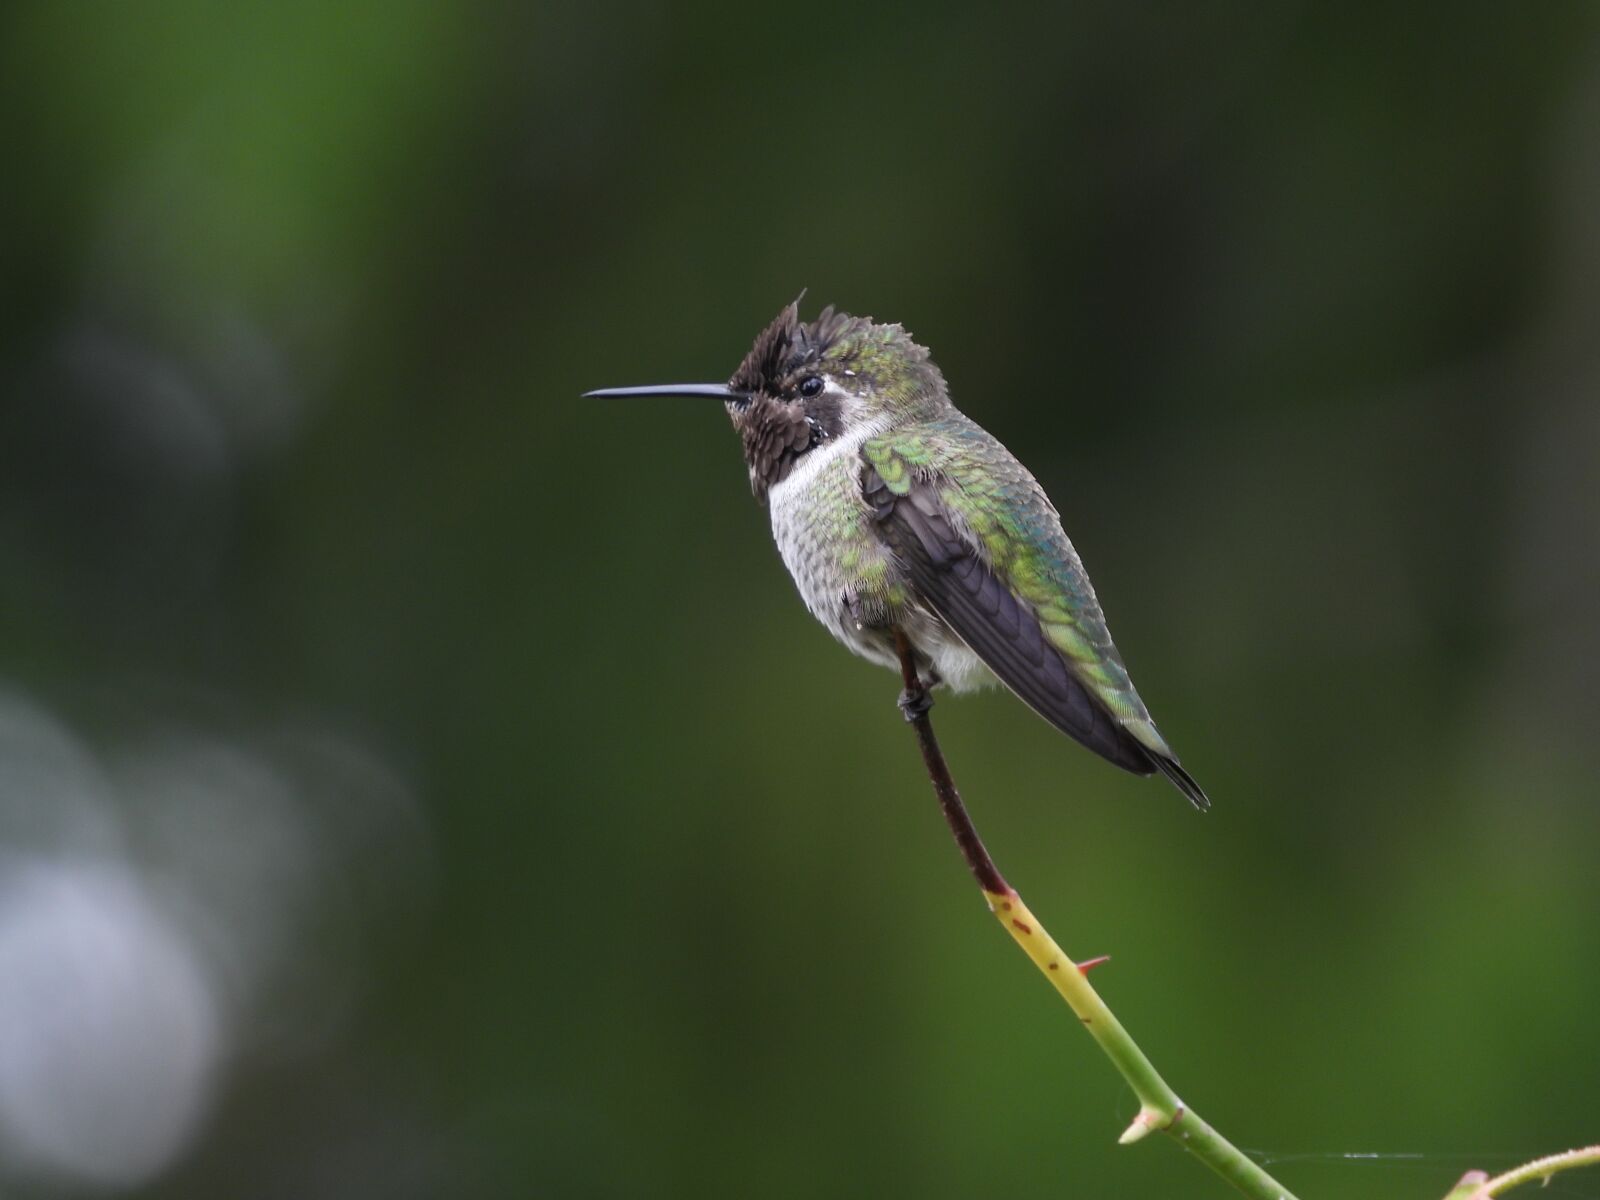 Nikon Coolpix P1000 sample photo. Anna, hummingbird, nature photography